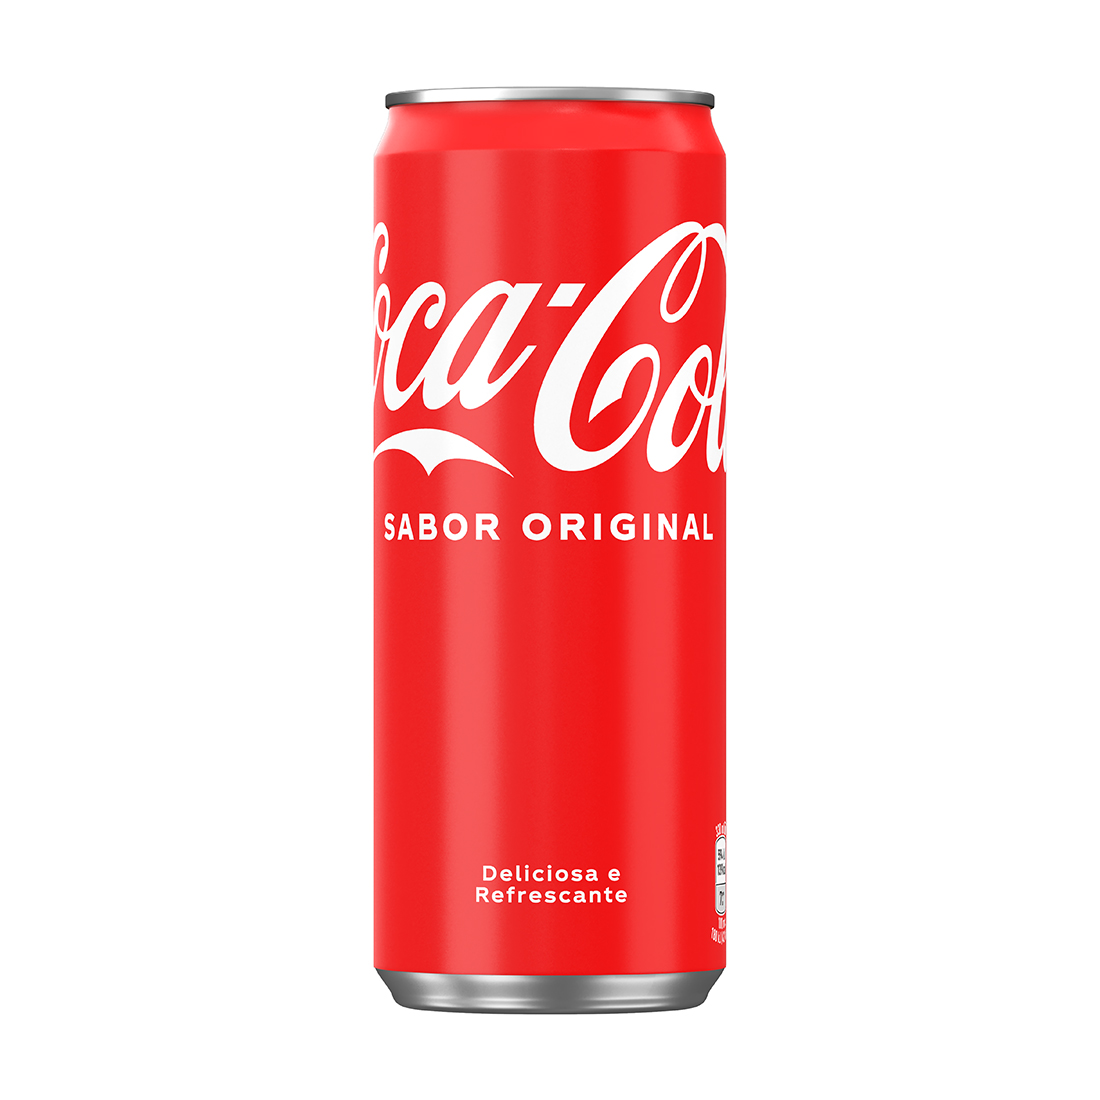 Uma garrafa de vidro de Coca-Cola sabor original